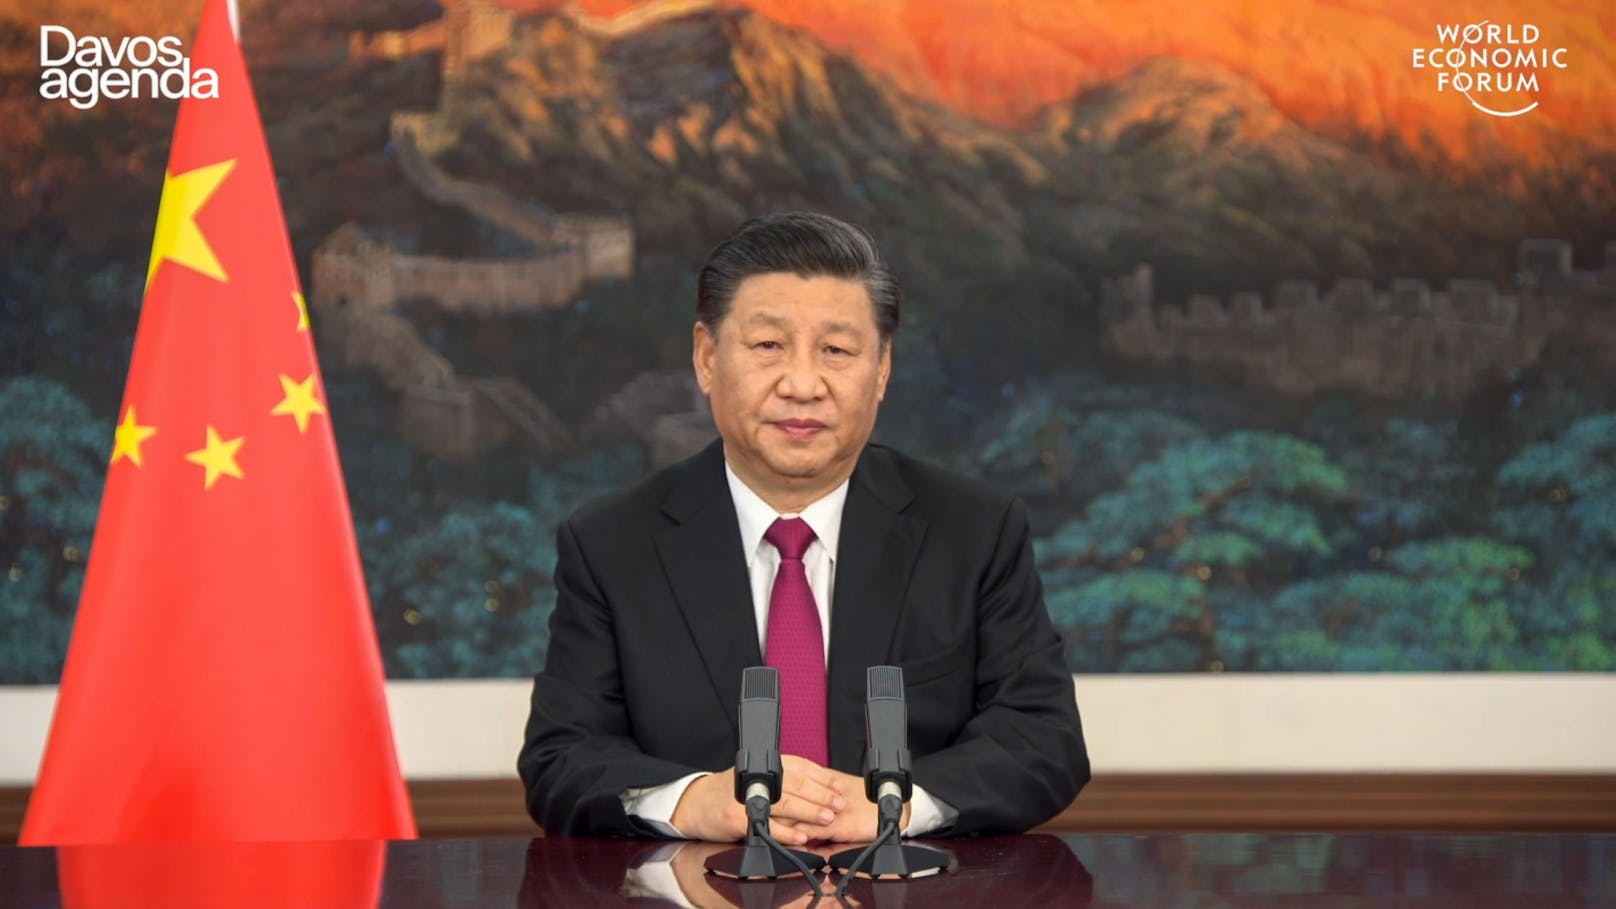 Xi Jinping sprach im Rahmen des Weltwirtschaftsforums.